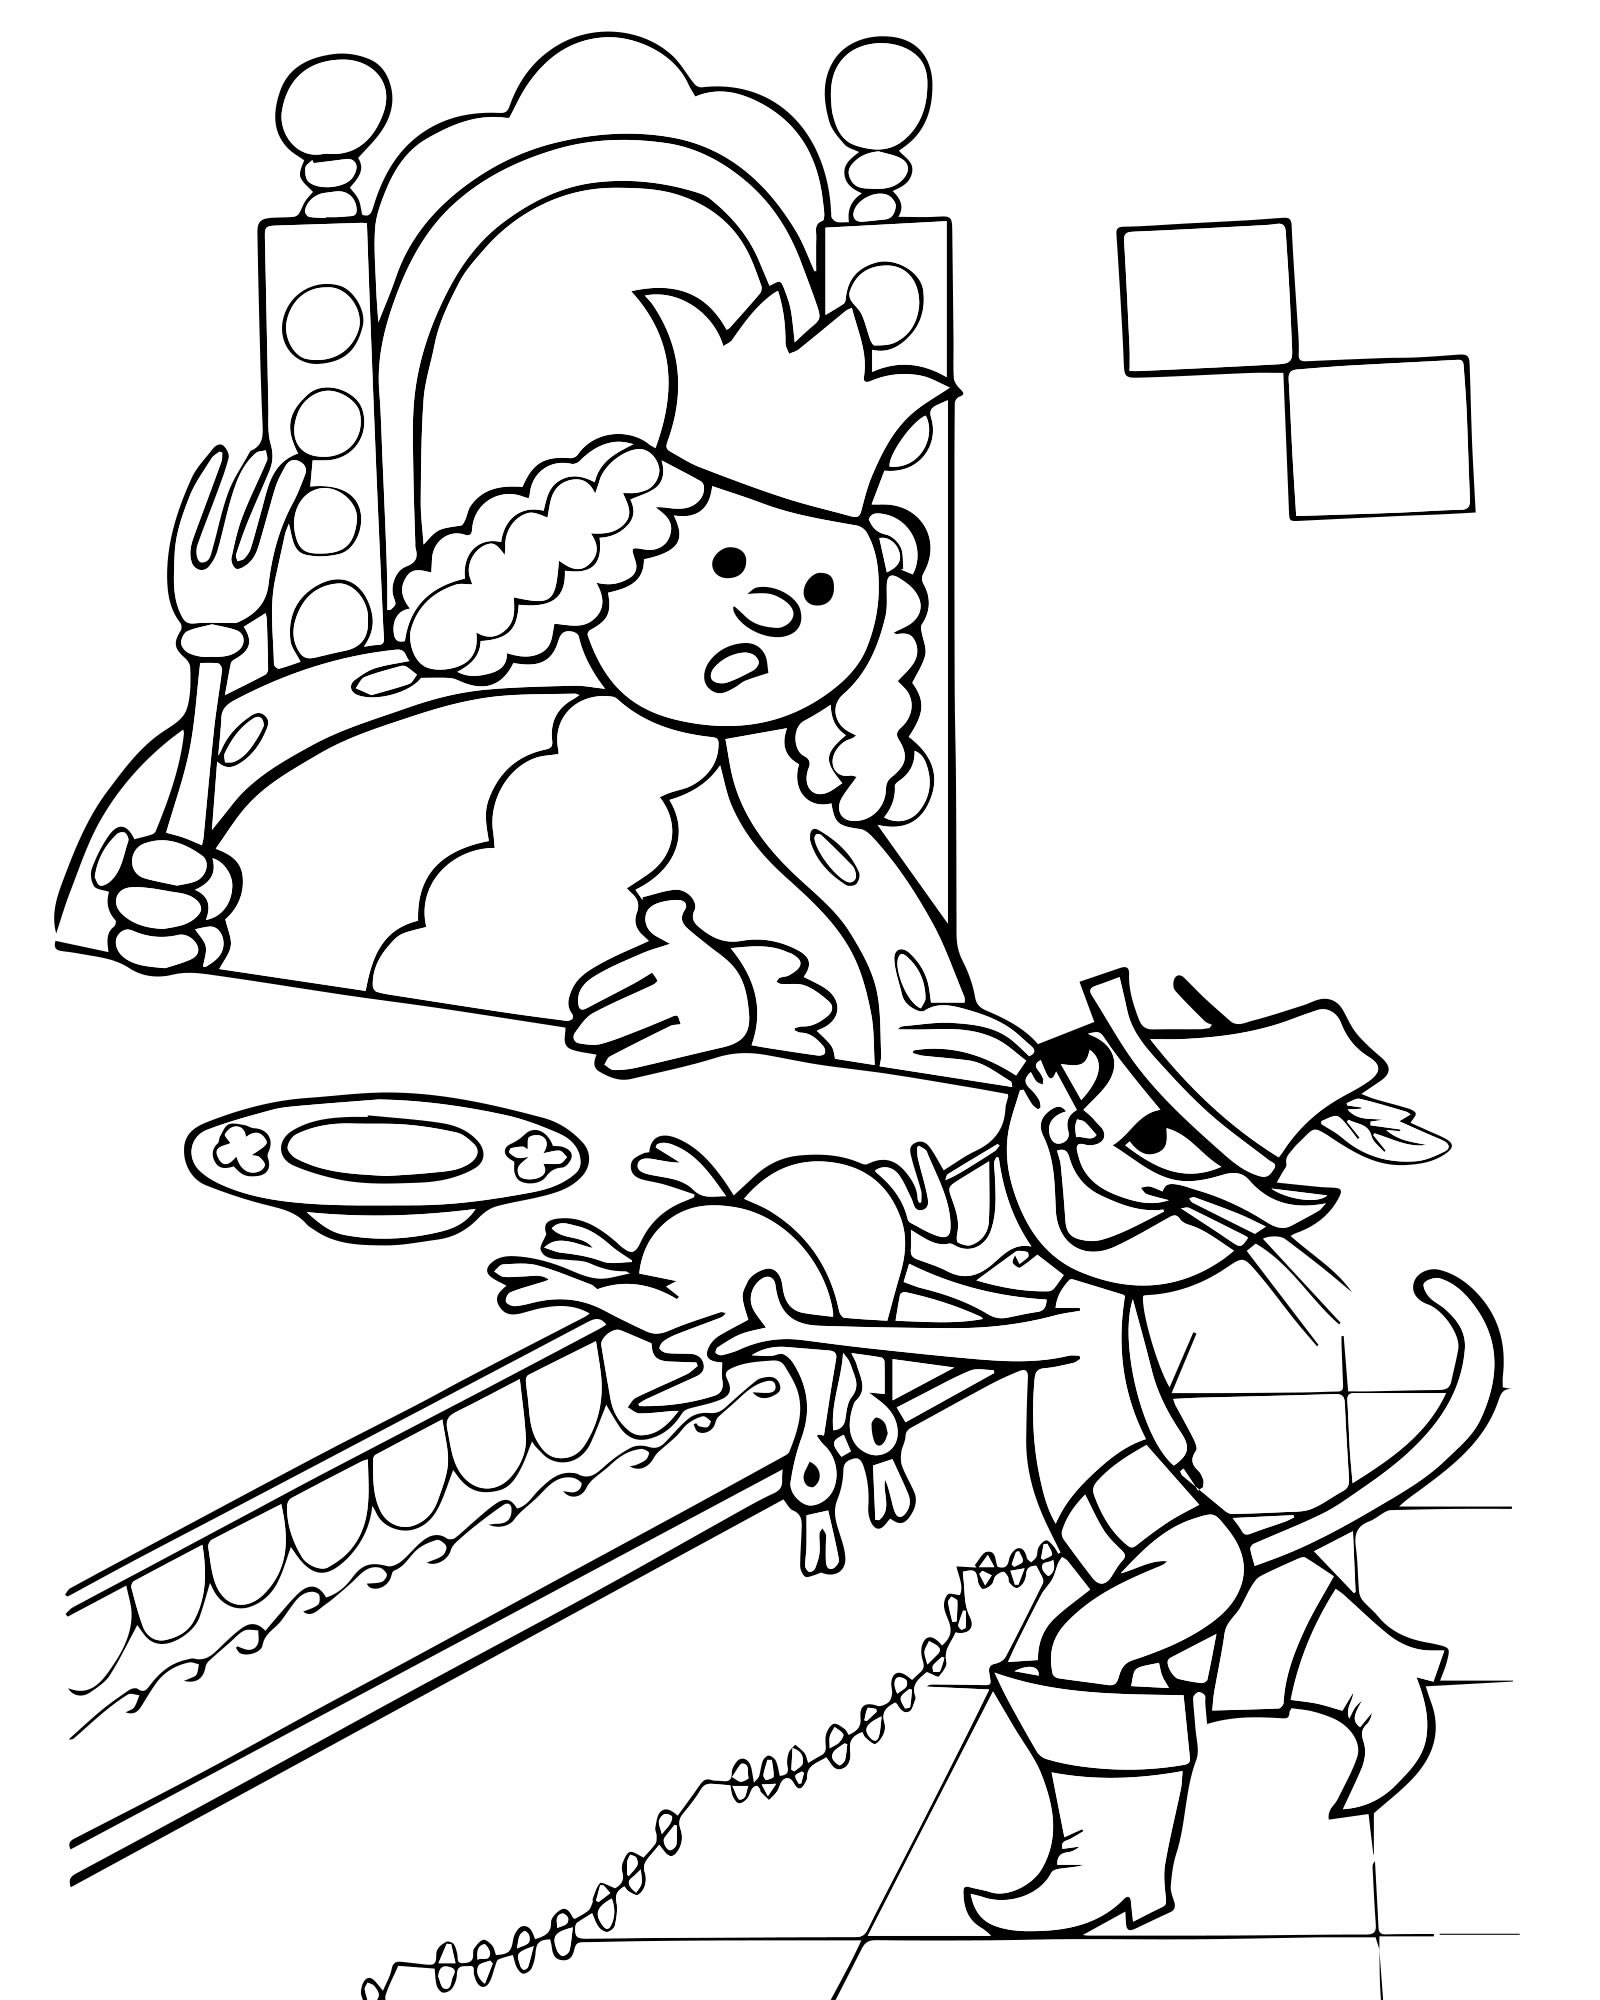 Рисунок к сказке Шарля Перро кот в сапогах